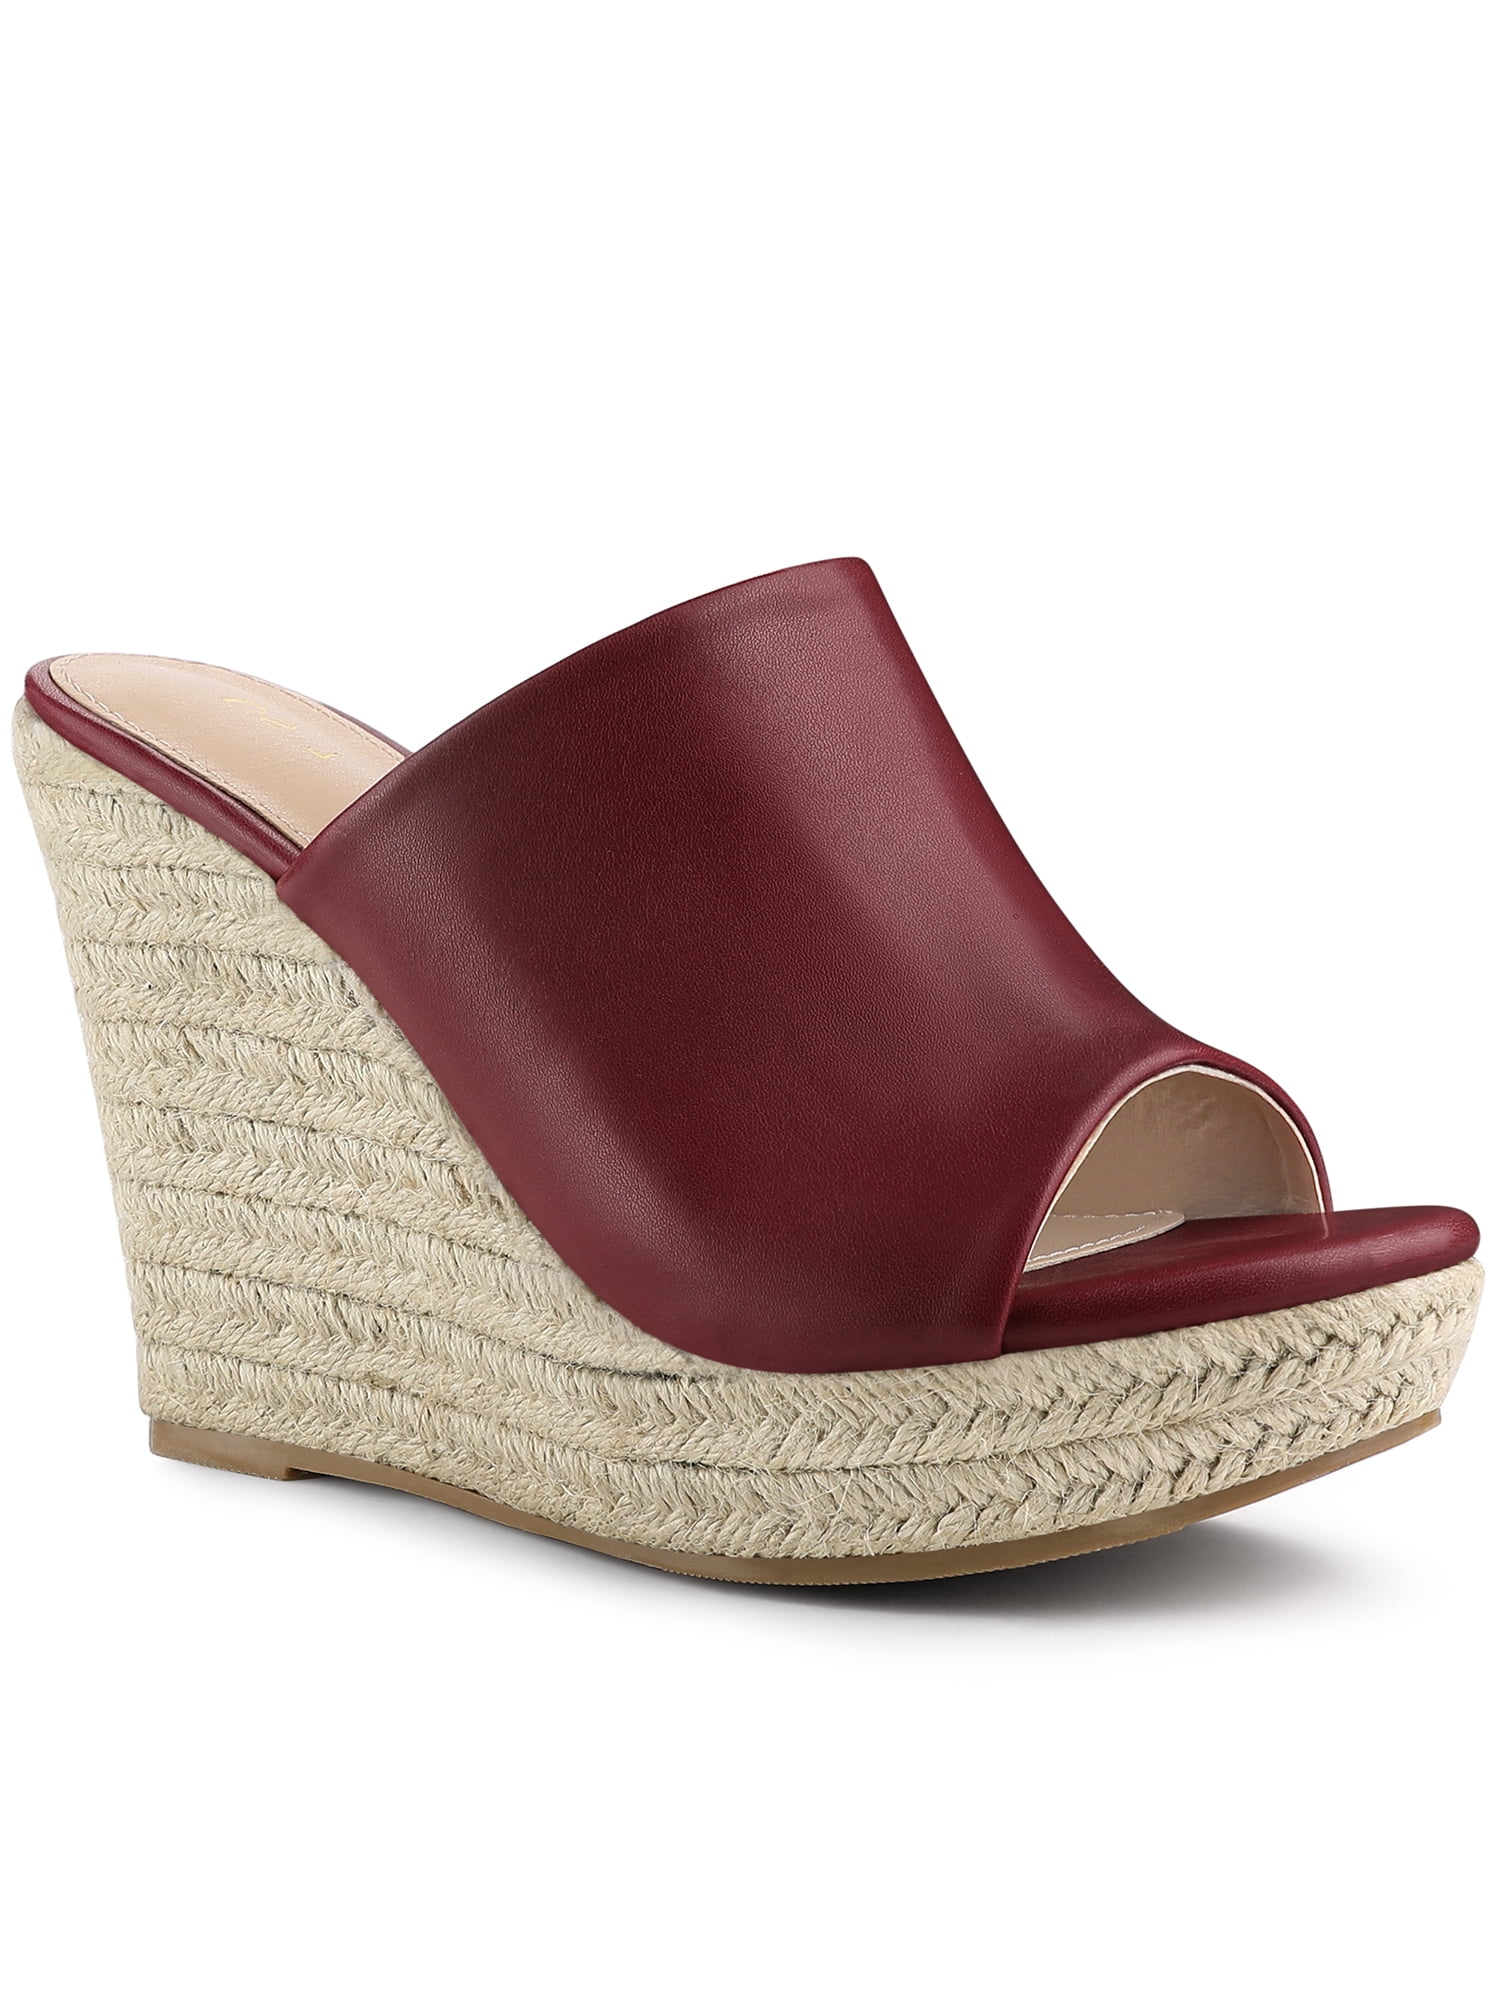 Allegra K Women's Slip-On Platform Wedge Heel Wedge Sandals - Walmart.com